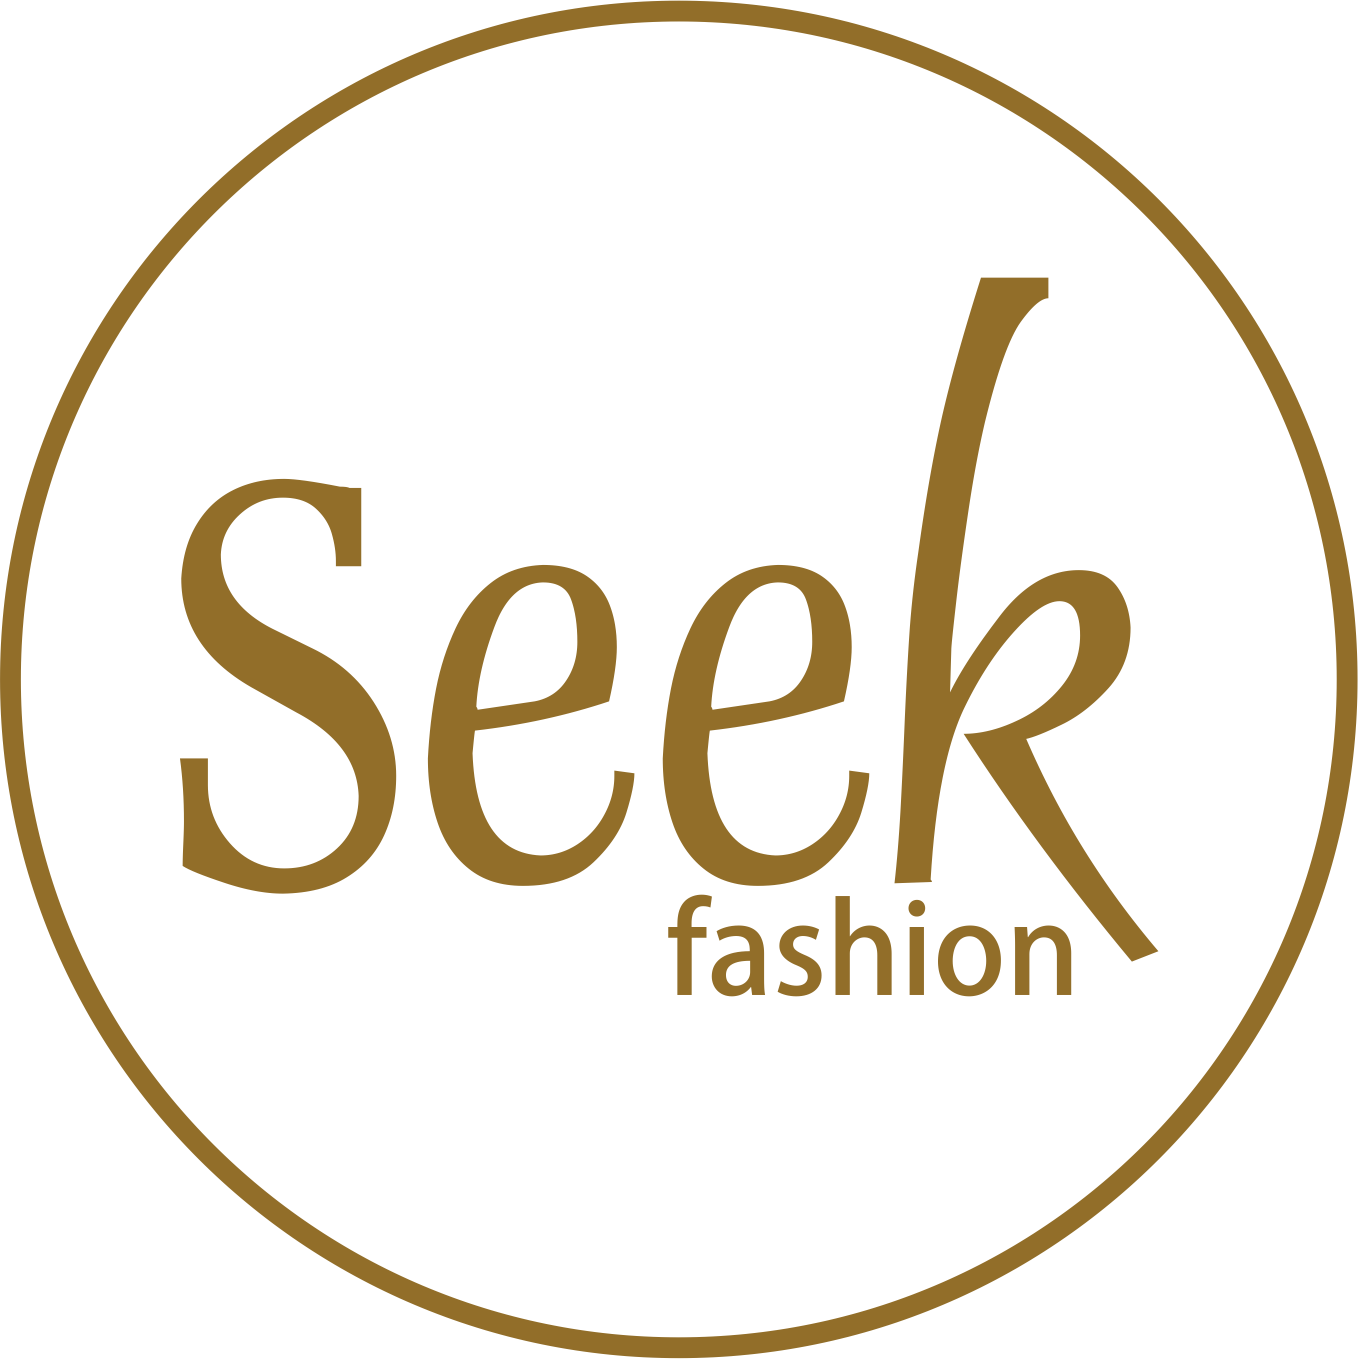 Seek Fashion